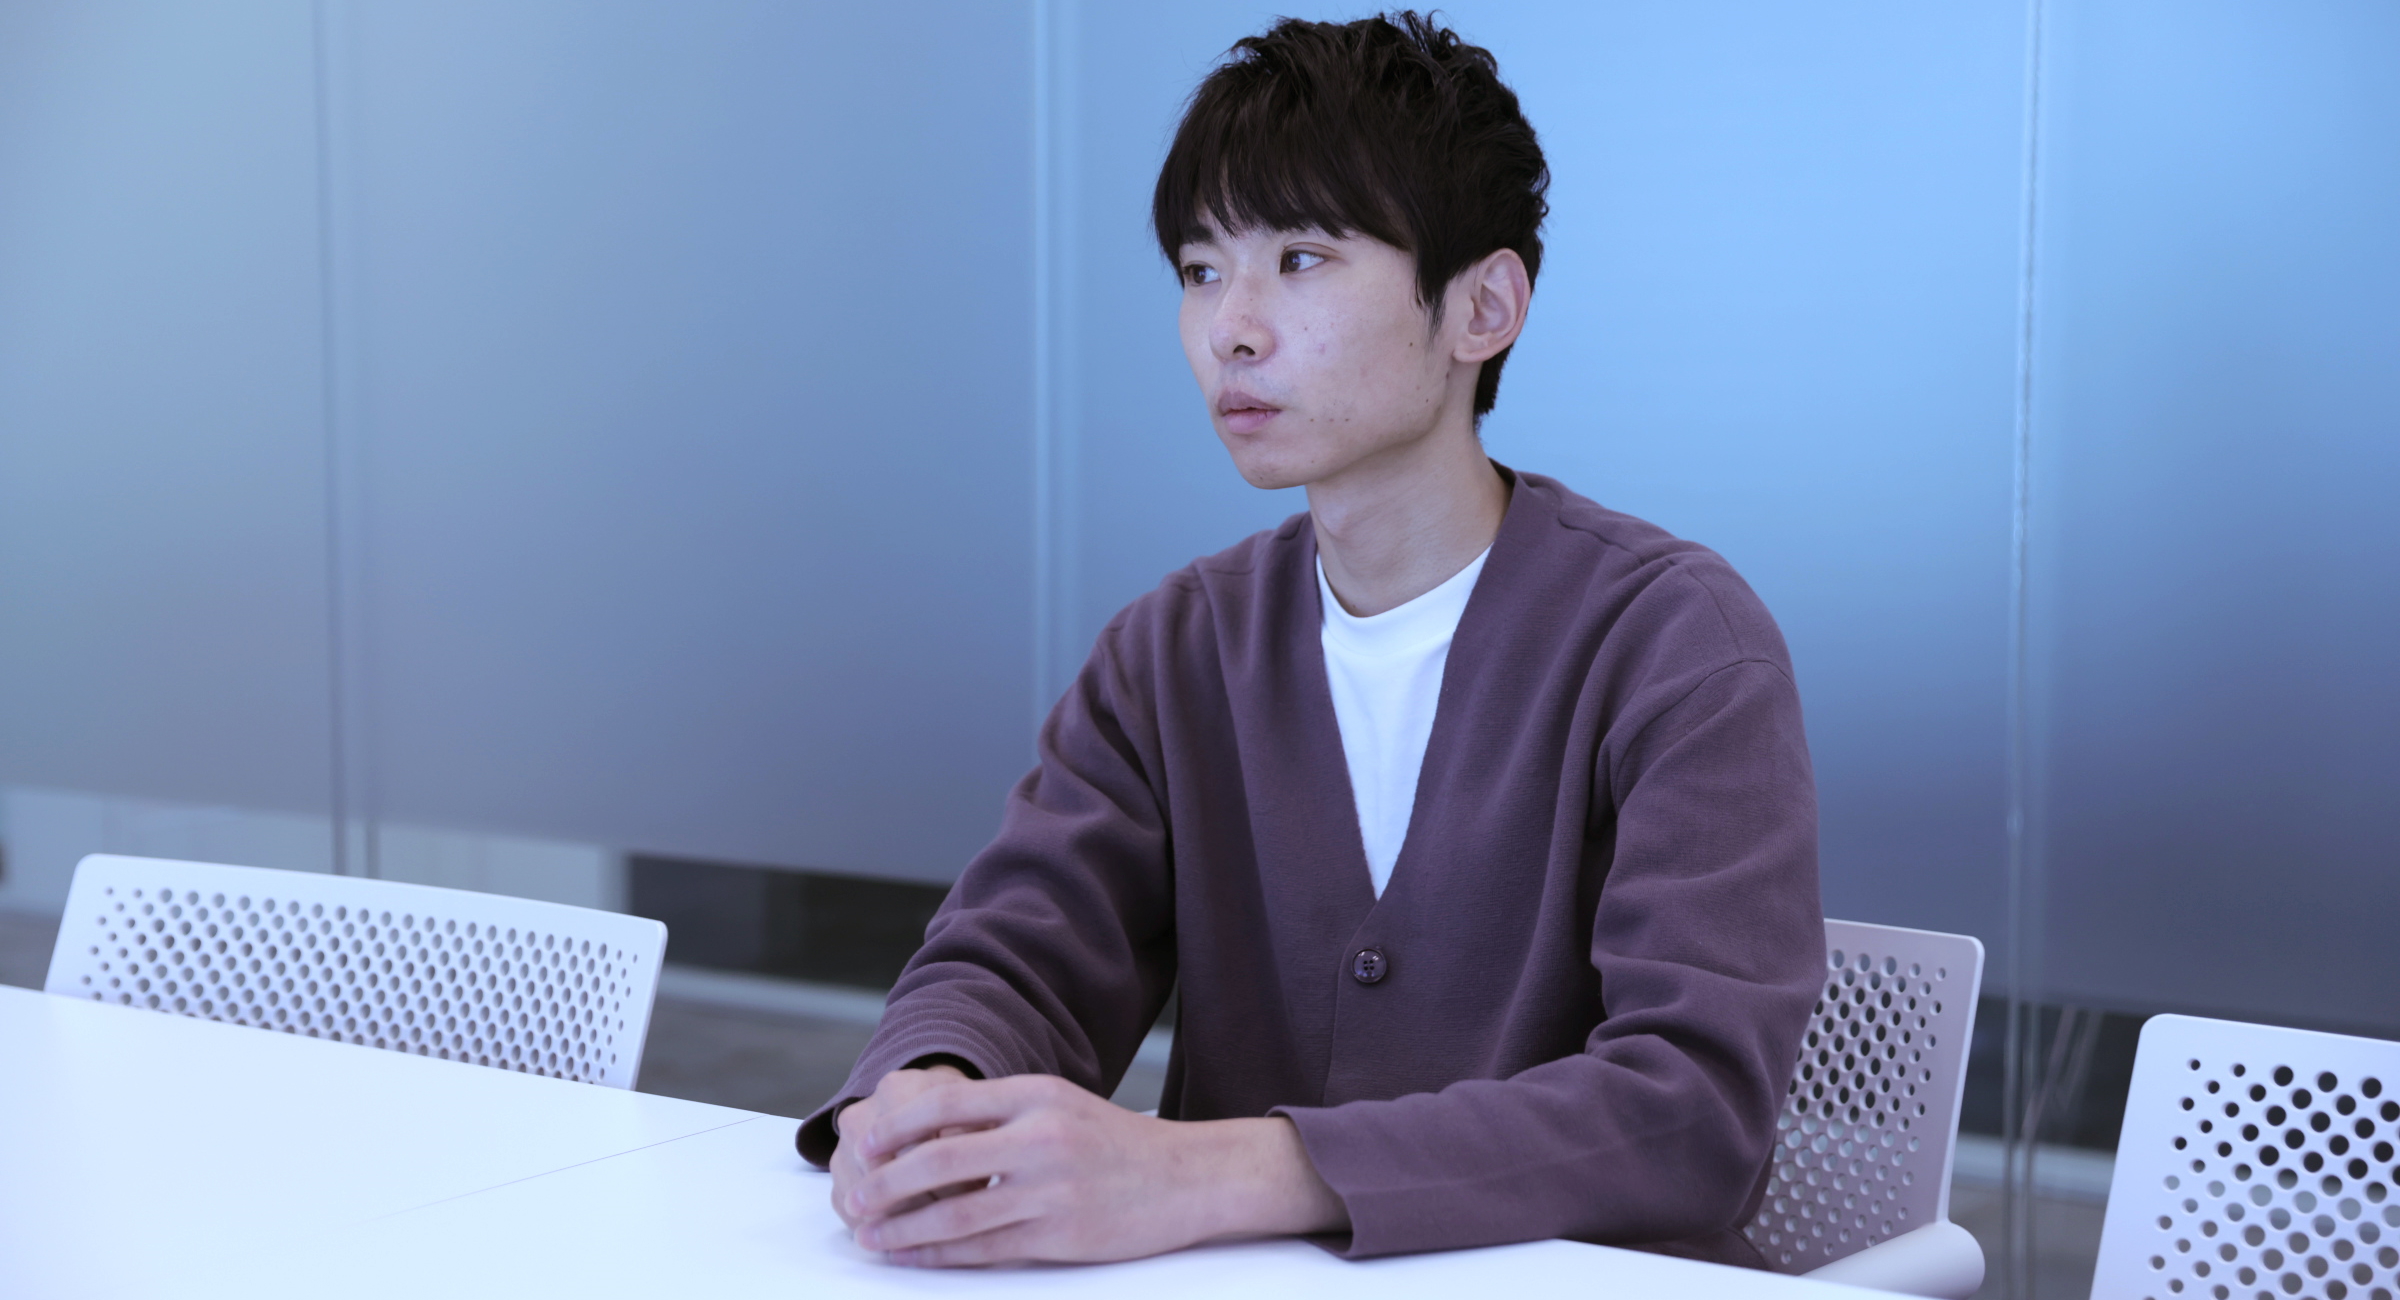 福岡が椅子に座ってに真剣な表情でインタビューに答えている様子の写真